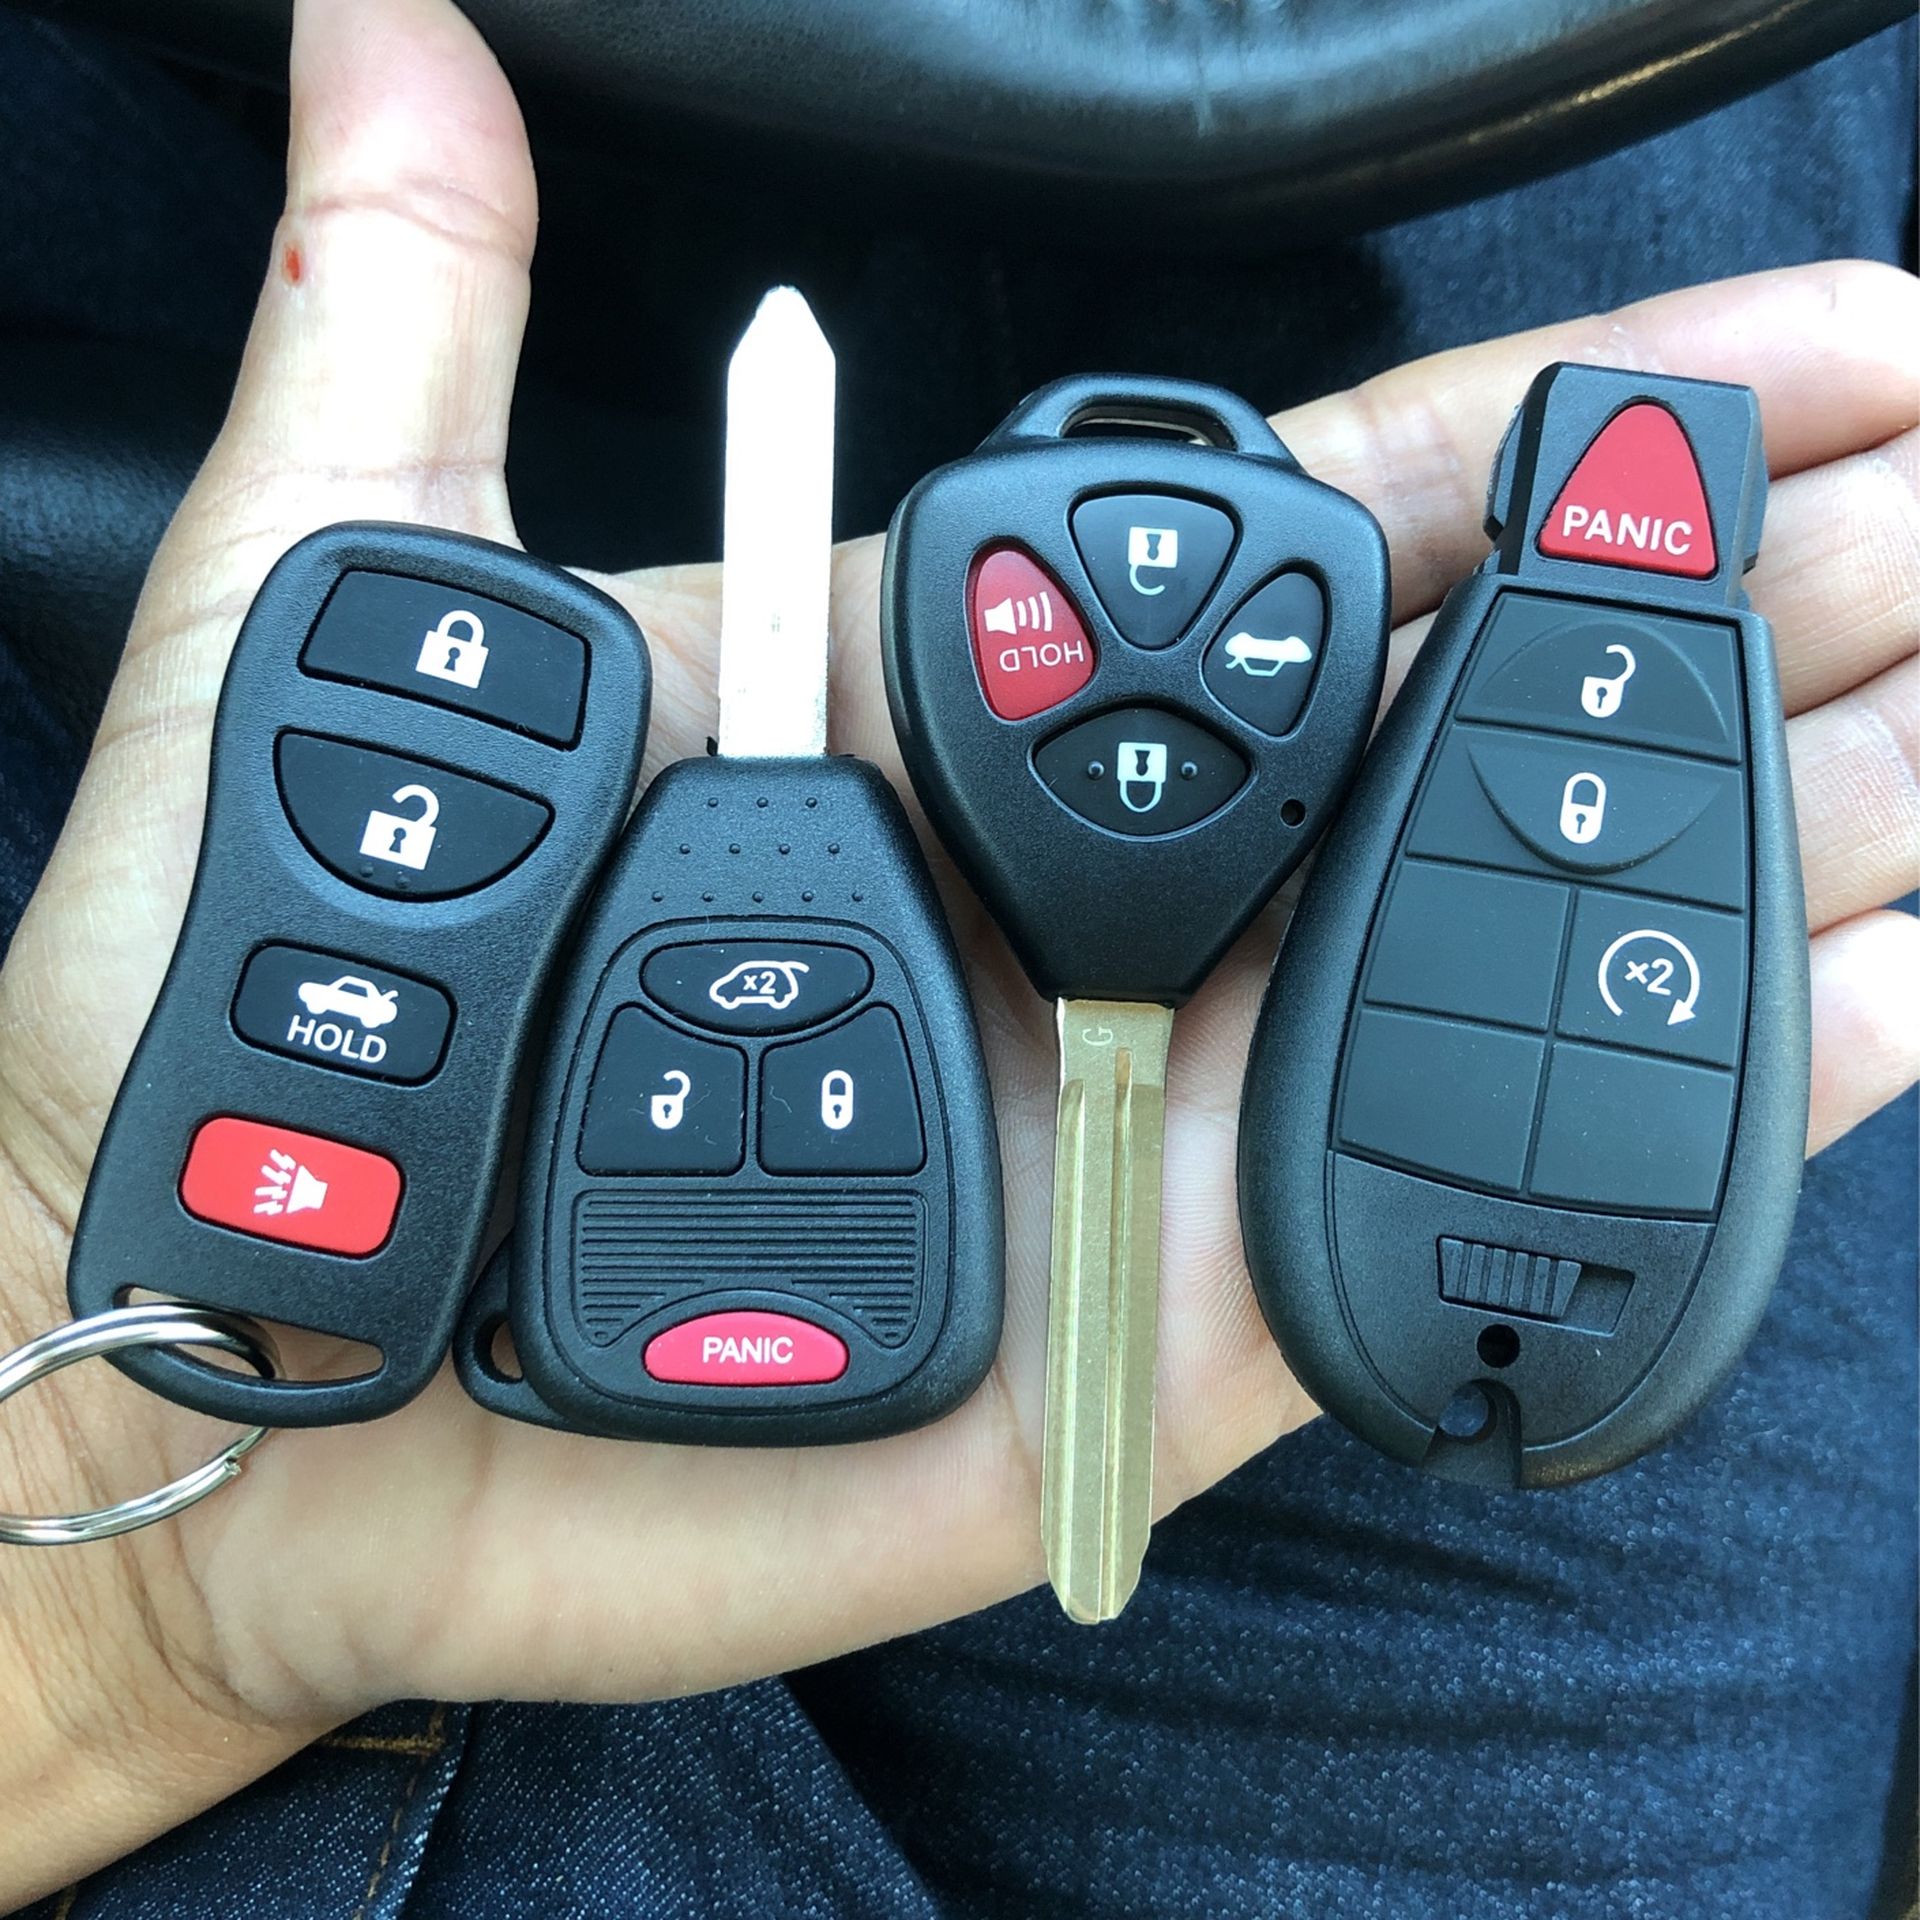 Llaves Keys Fobs Para Carros Muchas Marcas Y Modelos 